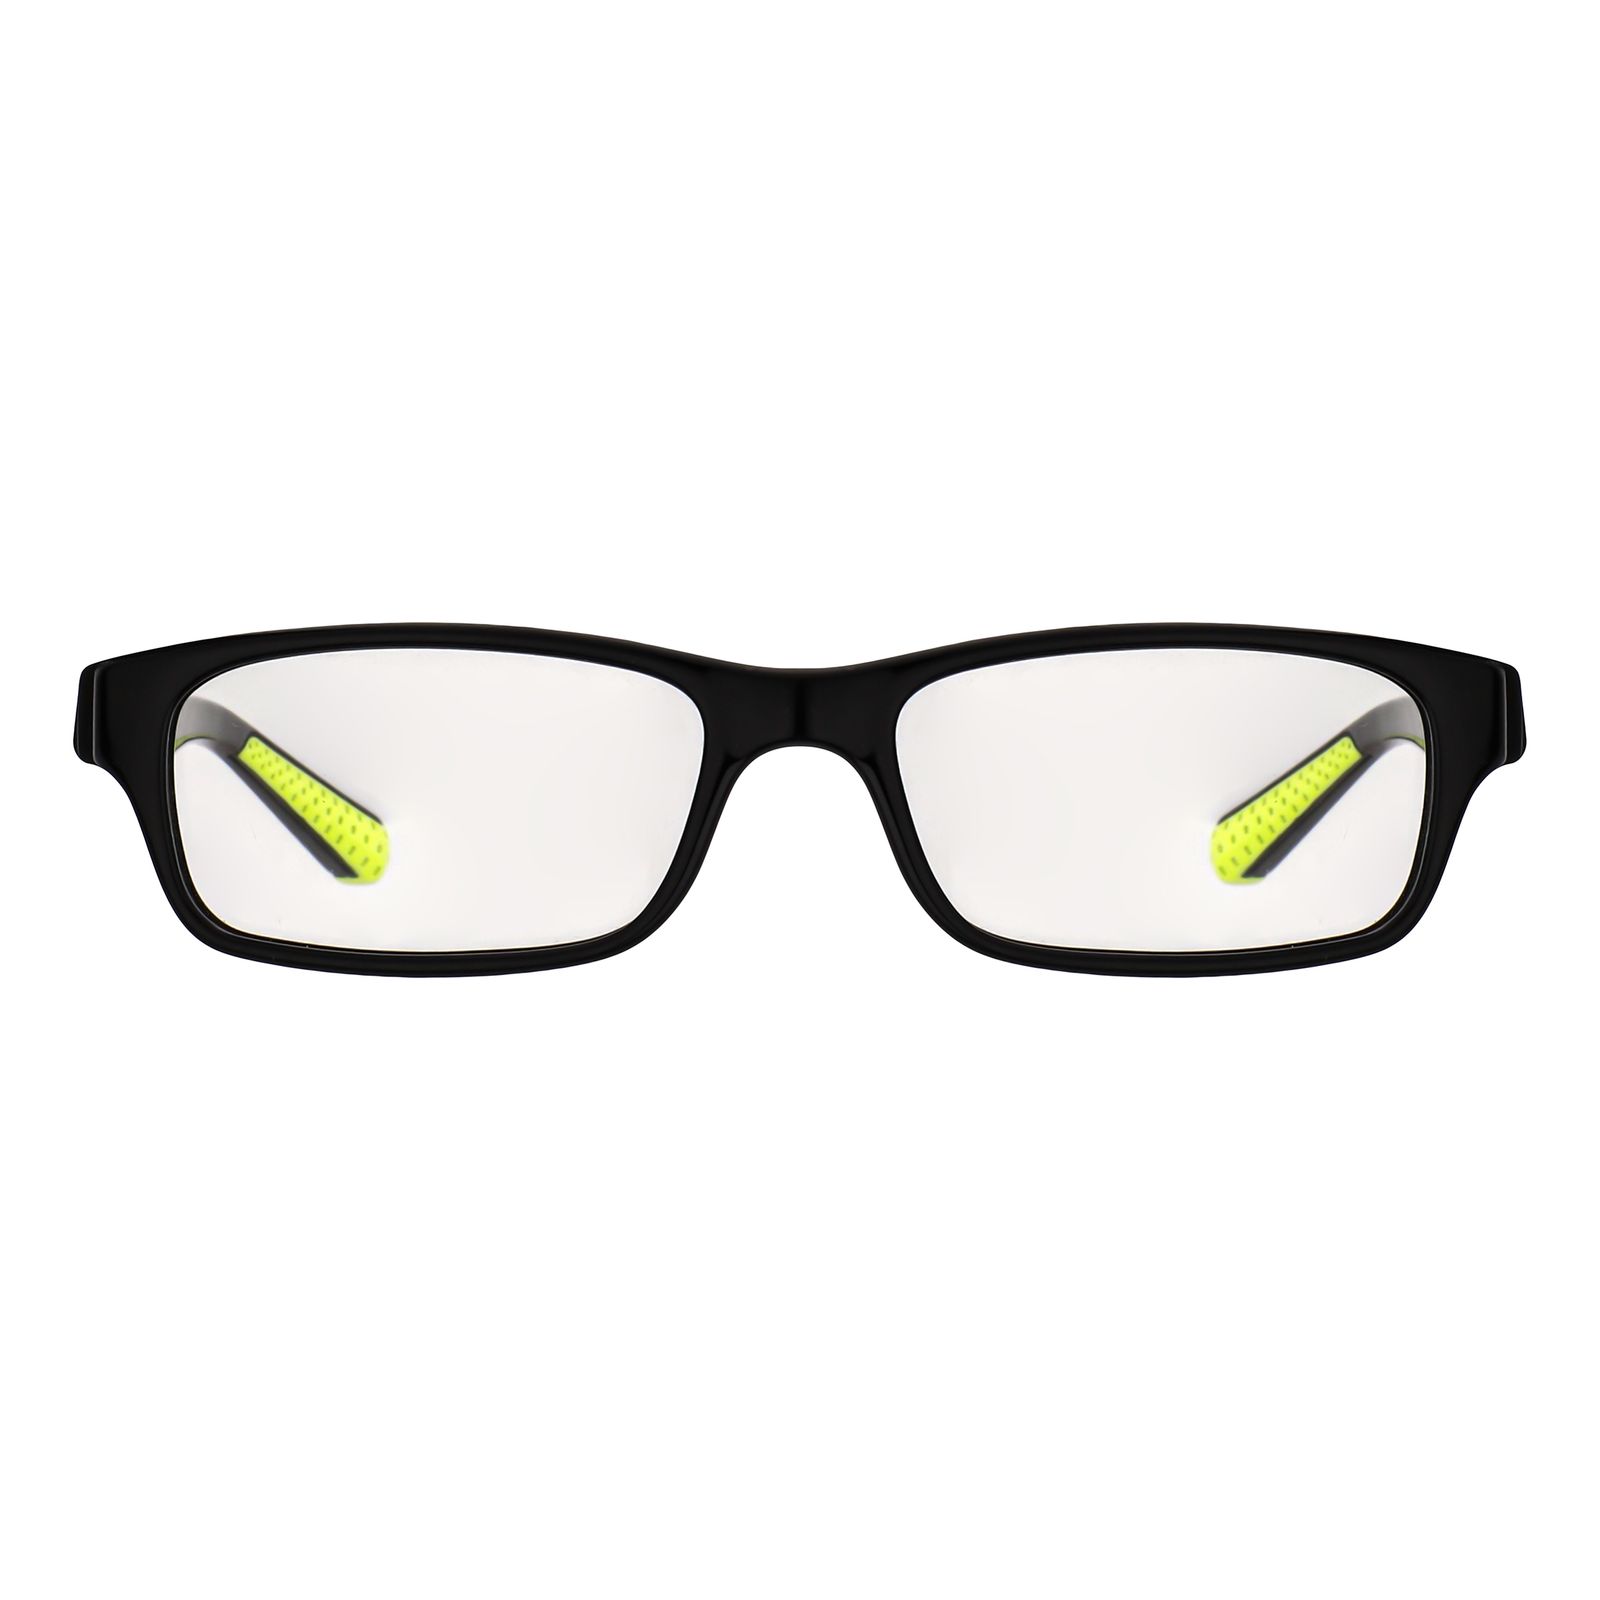 فریم عینک طبی نایکی مدل 5534-15 -  - 1